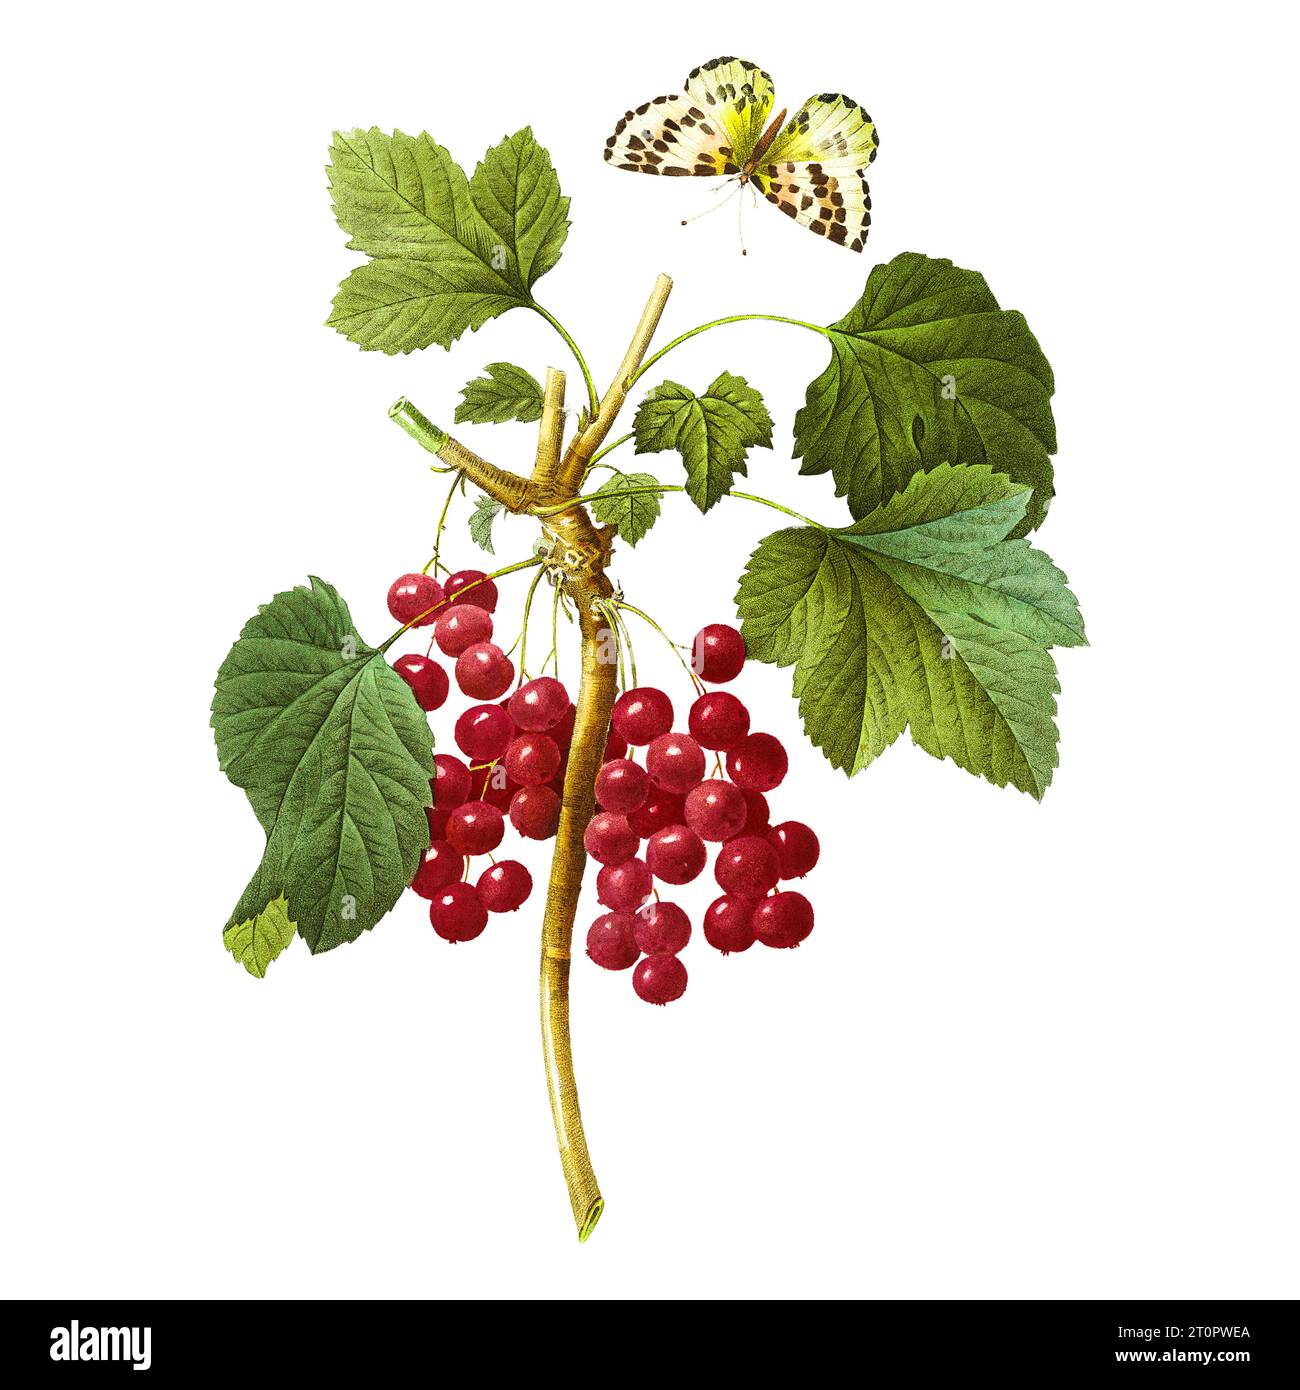 Illustration botanique de Pierre-Joseph Redoute, artiste botanique royal des reines et impératrices de France, surnommé le Raphaël des fleurs Banque D'Images